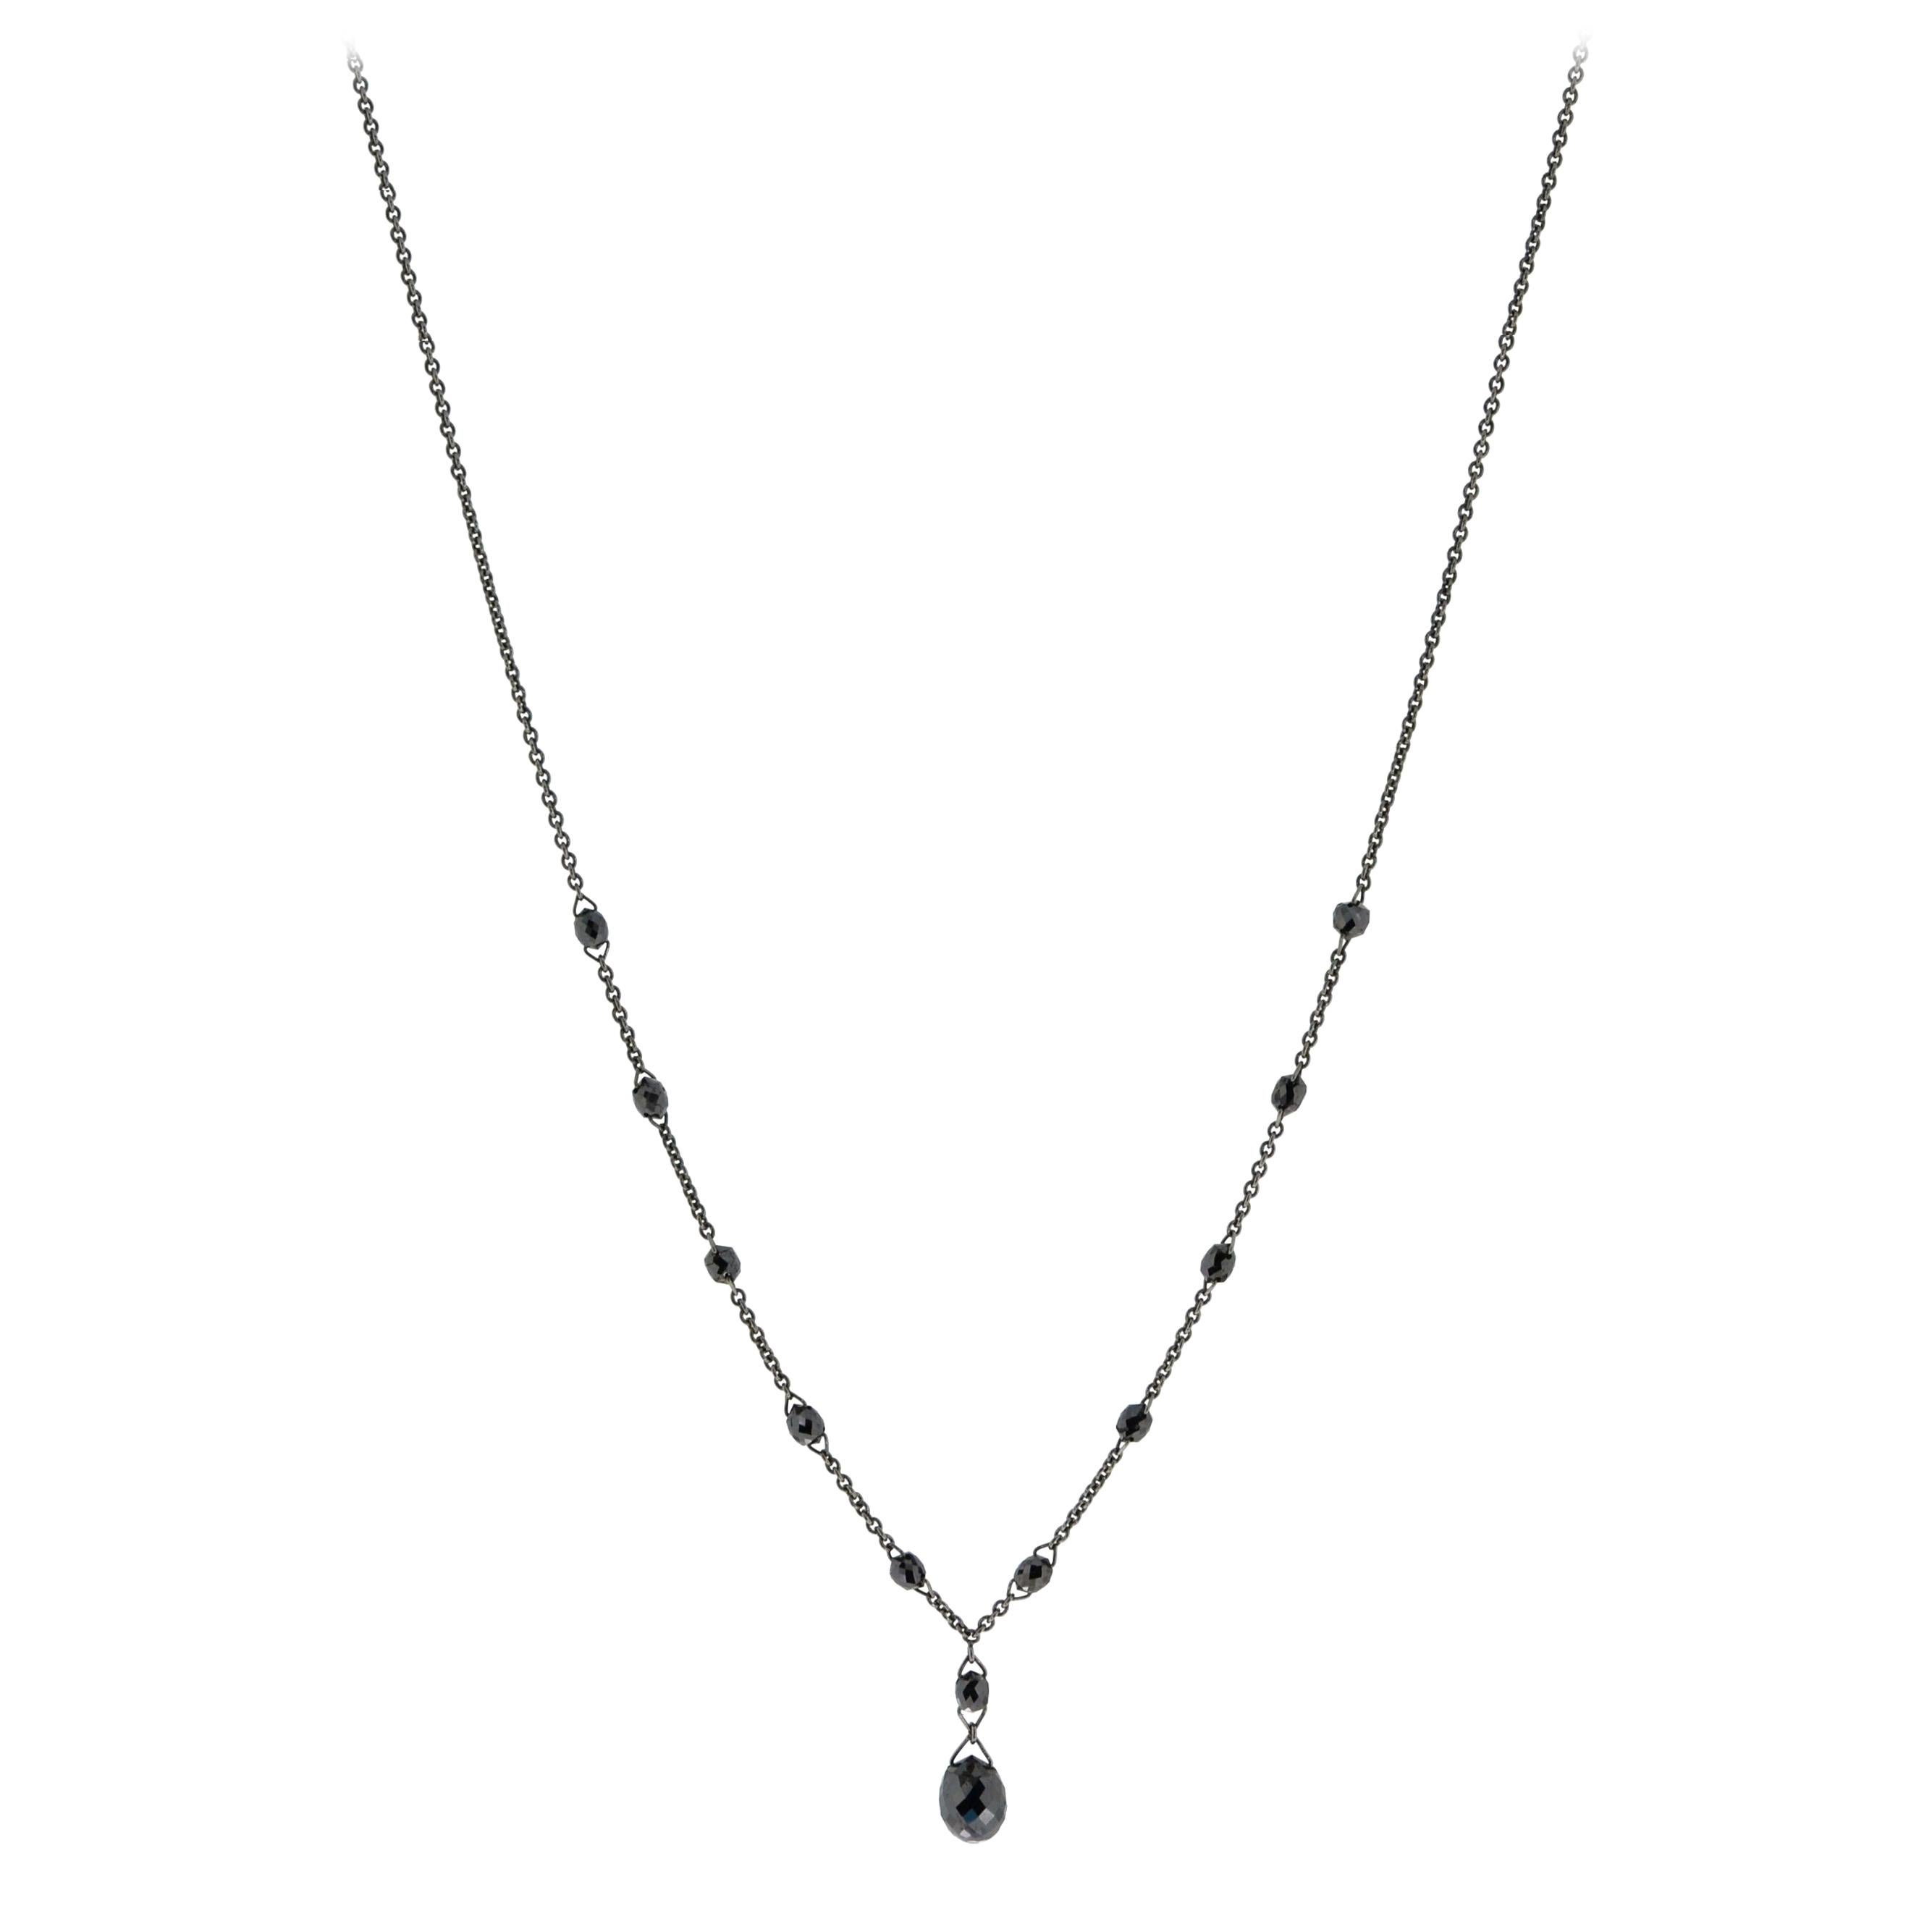 JR 3.52 Carat Black Diamond Briolette Dangling Necklace 18 Karat Gold For Sale